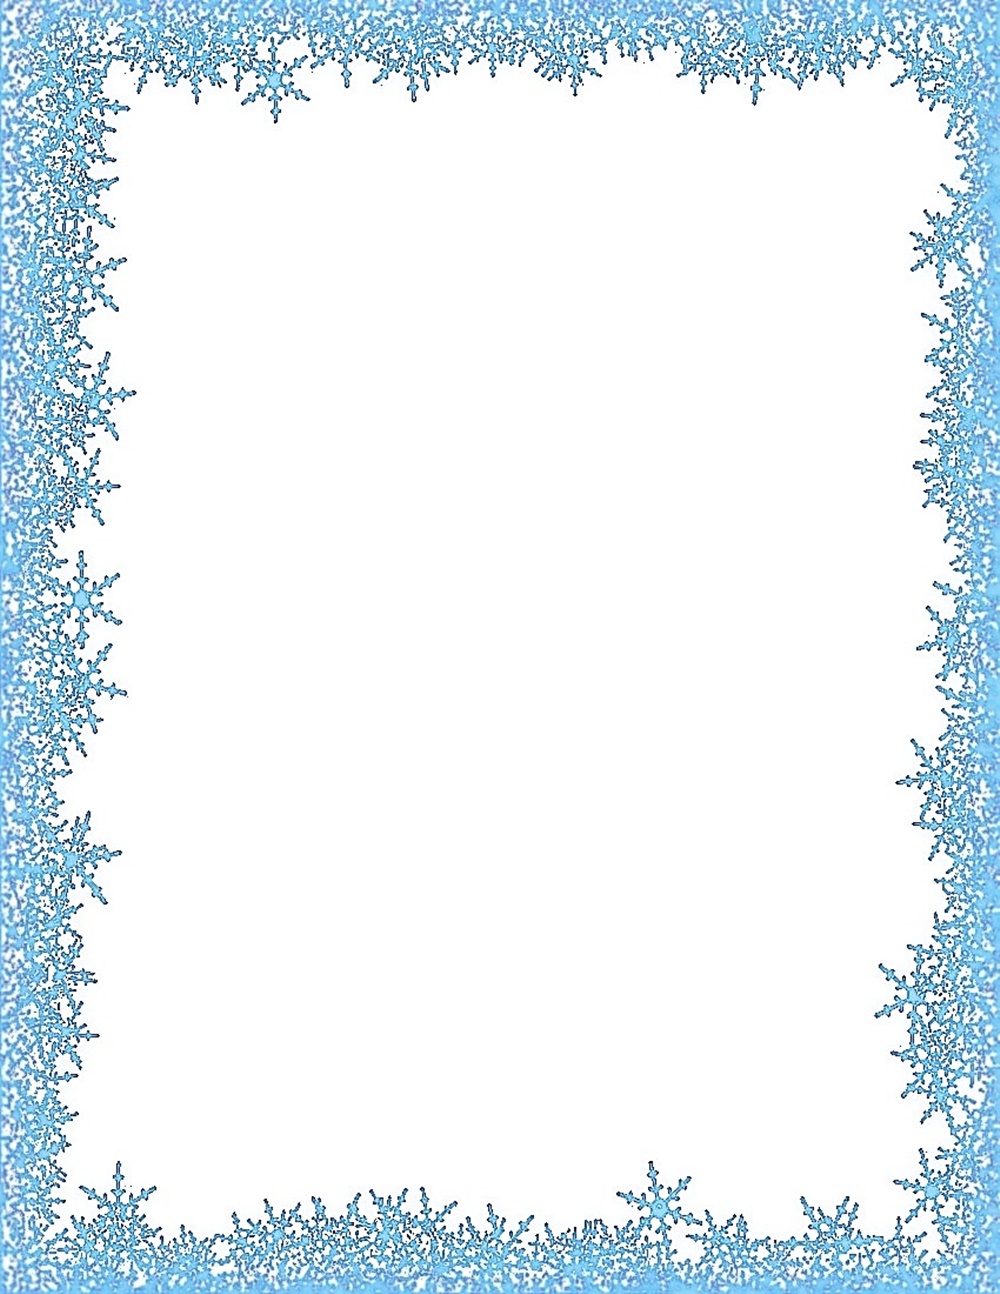 Рамка из снежинок на прозрачном фоне